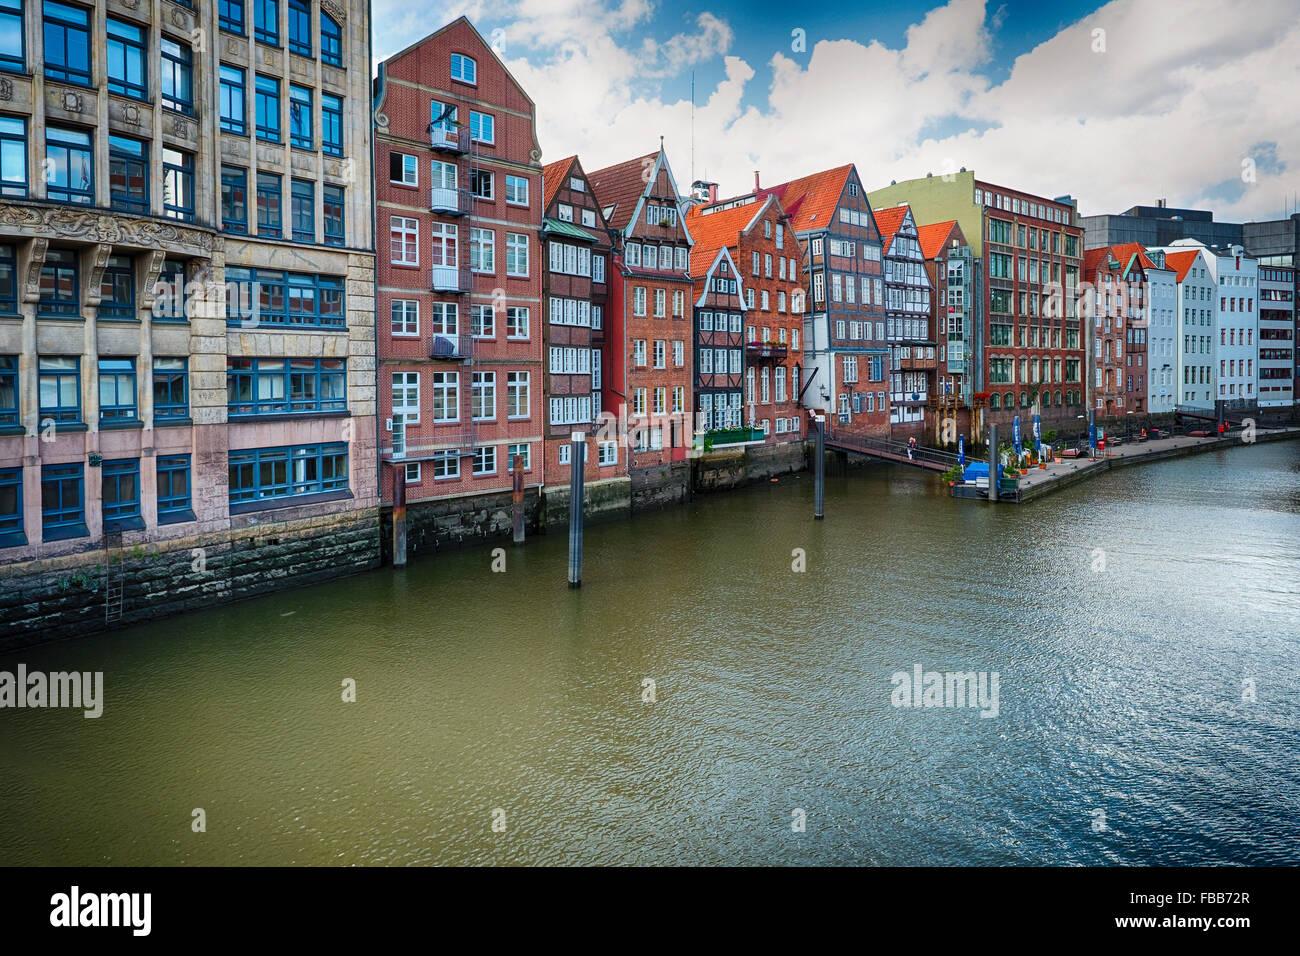 Hilera de casas coloridas en la vieja ciudad de Hamburgo a lo largo de un canal, visto desde el Puente Alto, Hamburgo, Alemania. Foto de stock